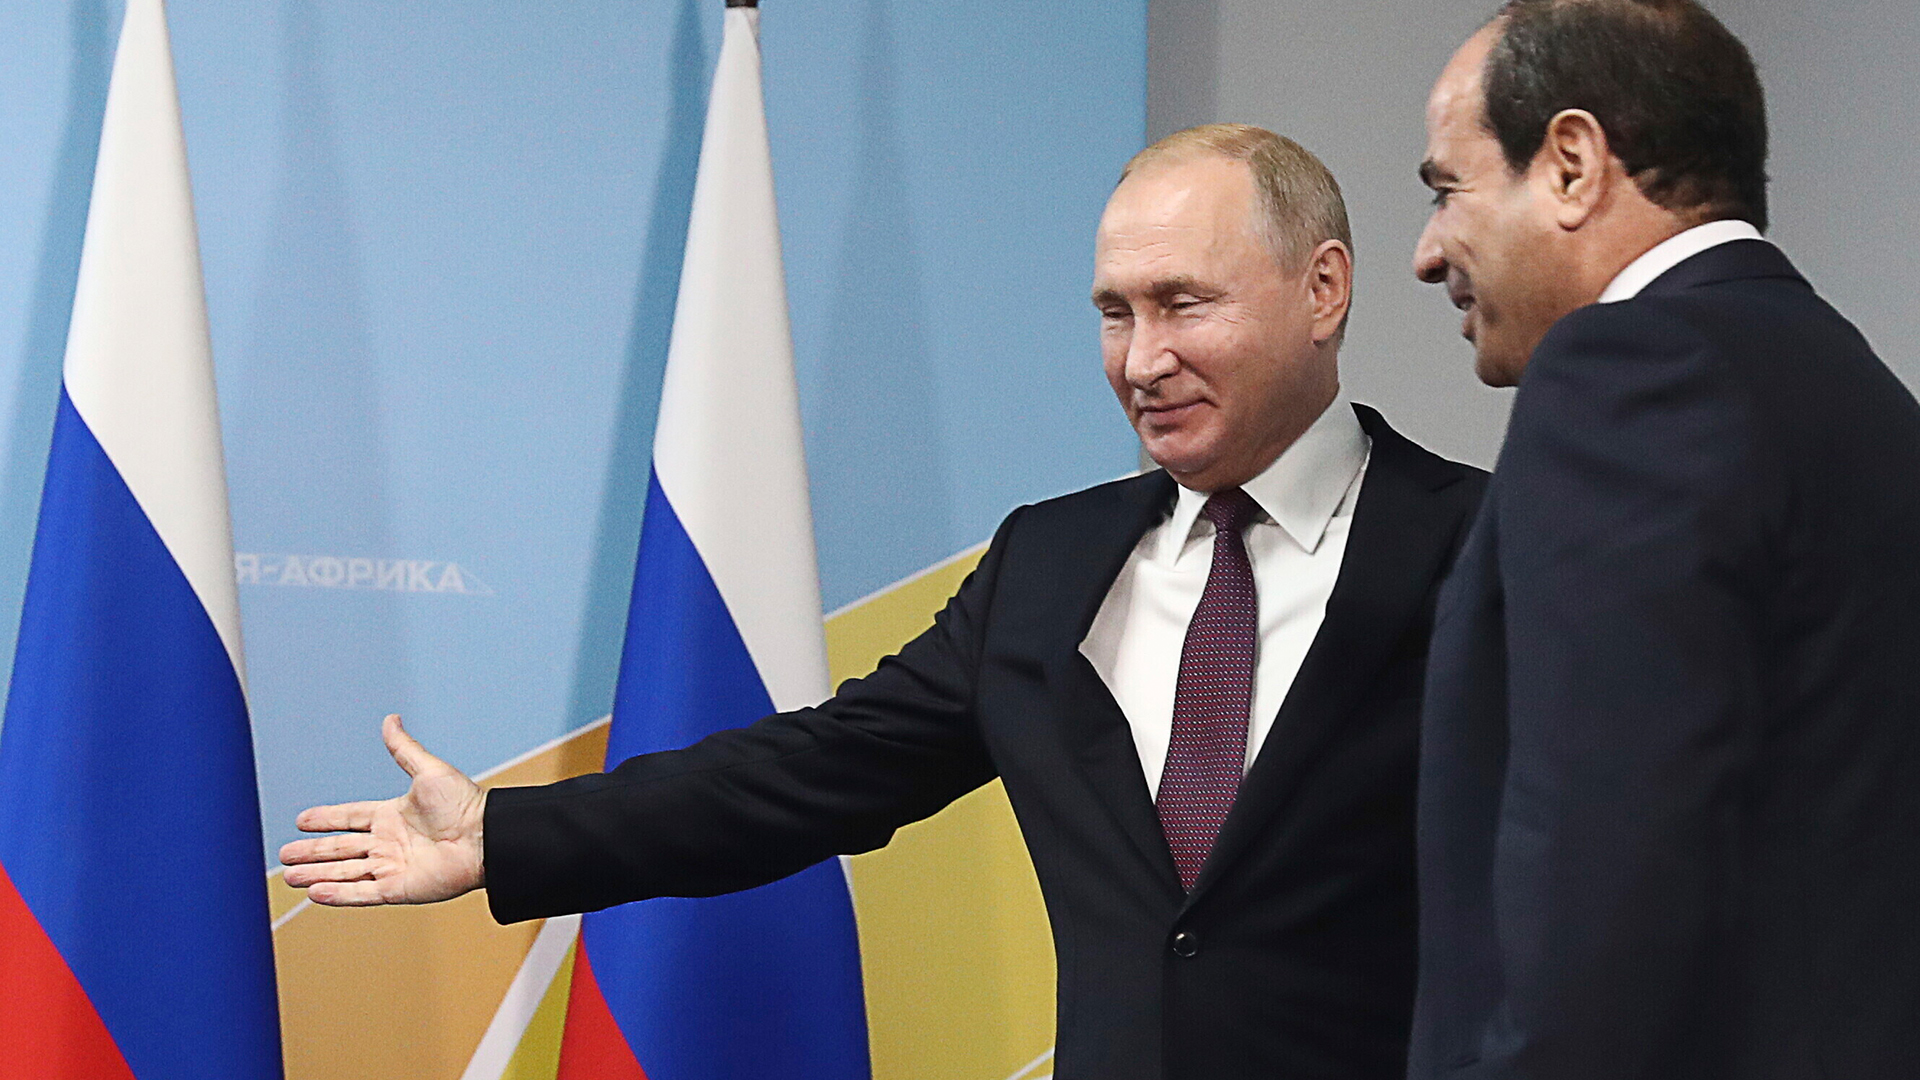 Vladimkir Putin, Abdel Fattah el-Sisi  | AP